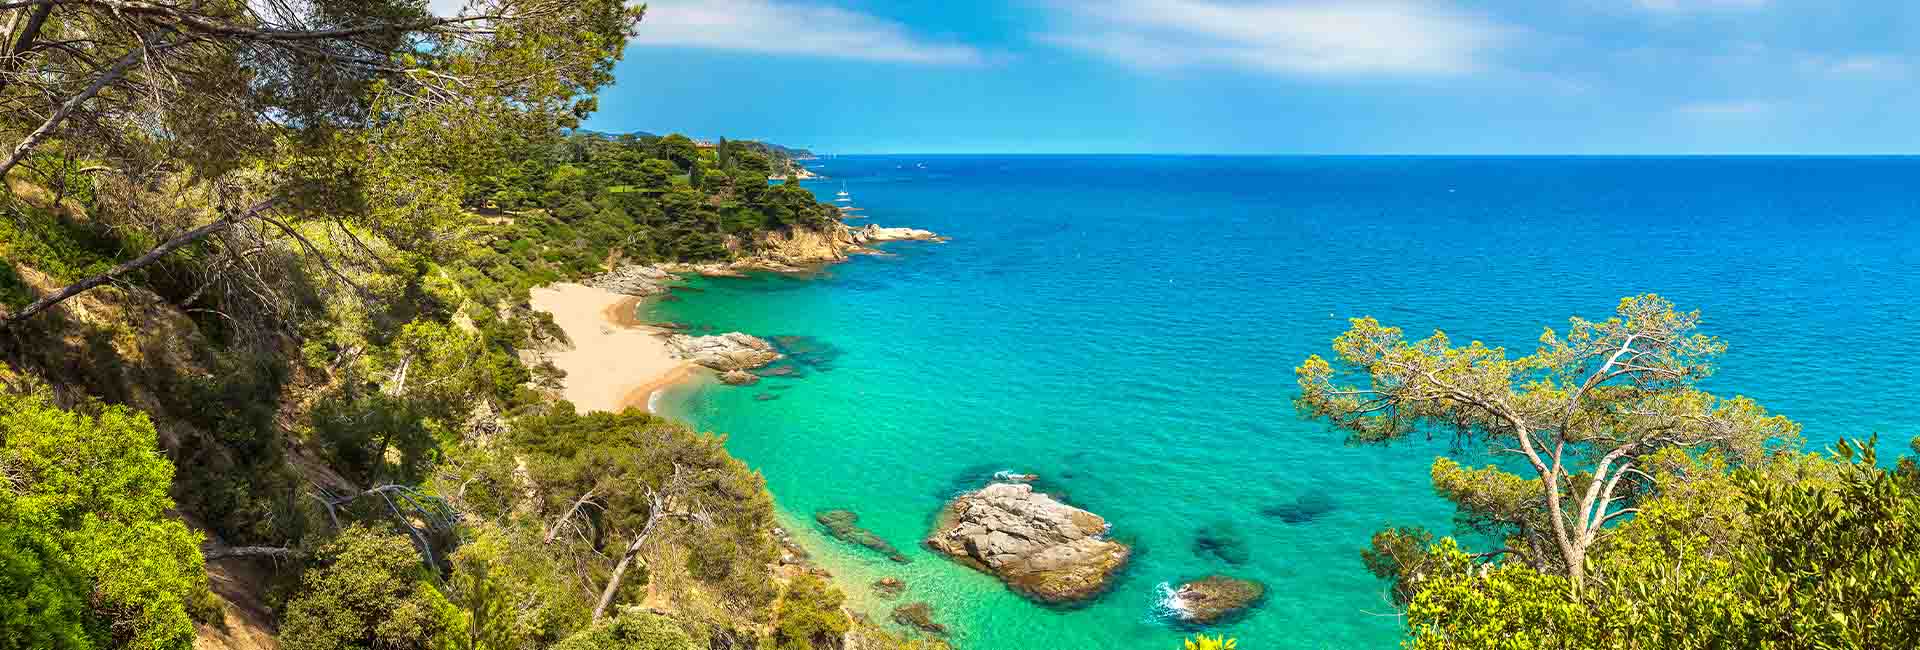 An idyllic coastal scene on the Costa Brava